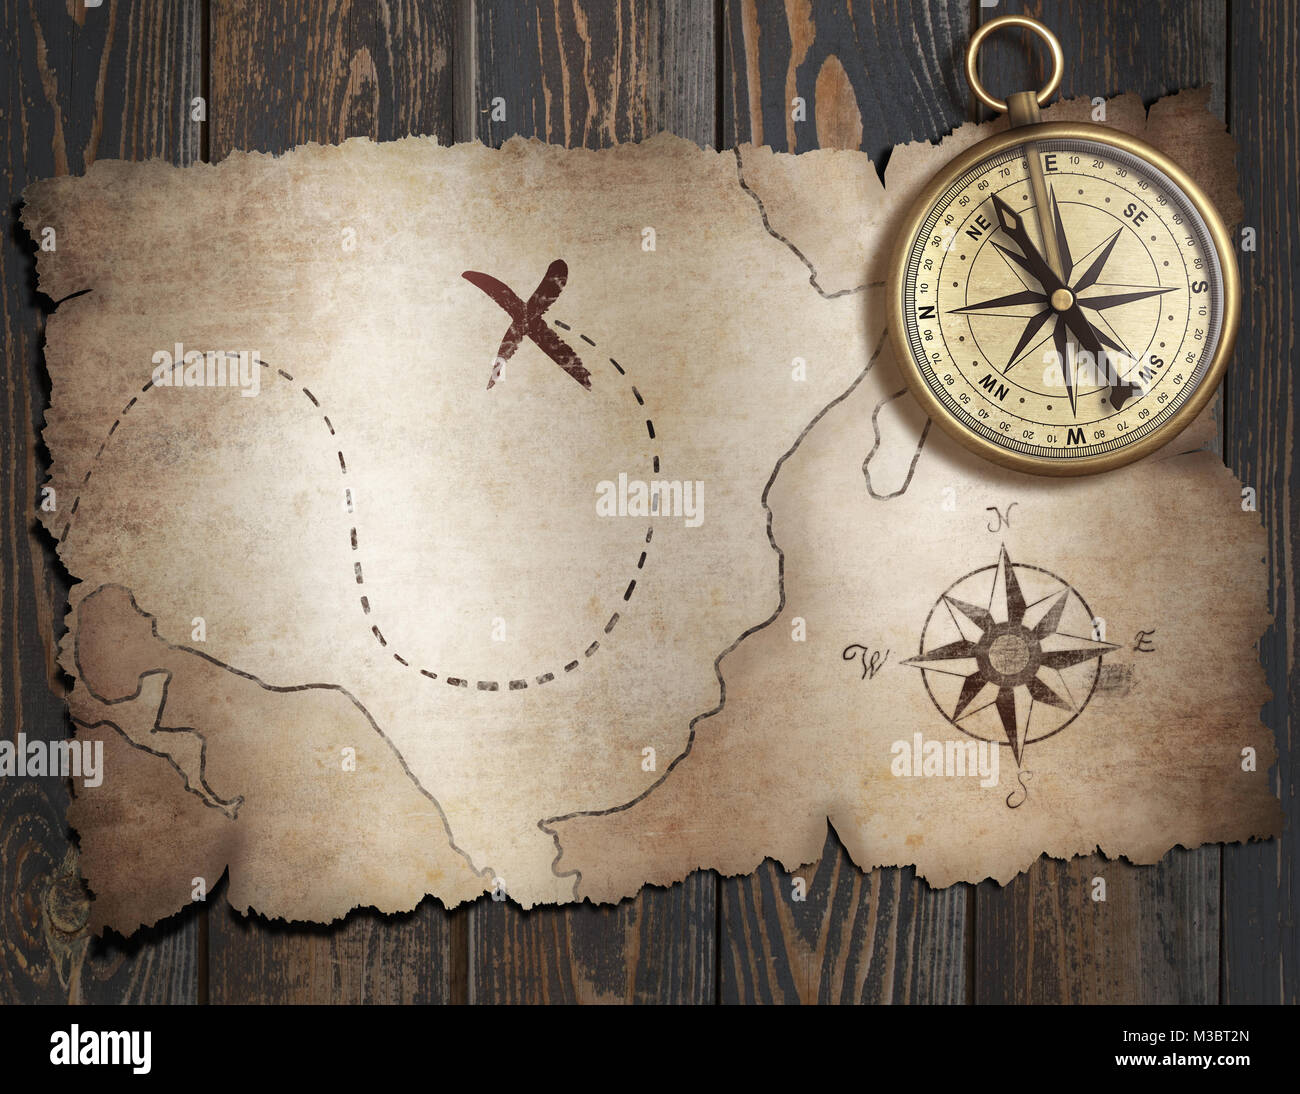 Vieux trésor pirates' map with compass sur table en bois Vue de dessus Banque D'Images